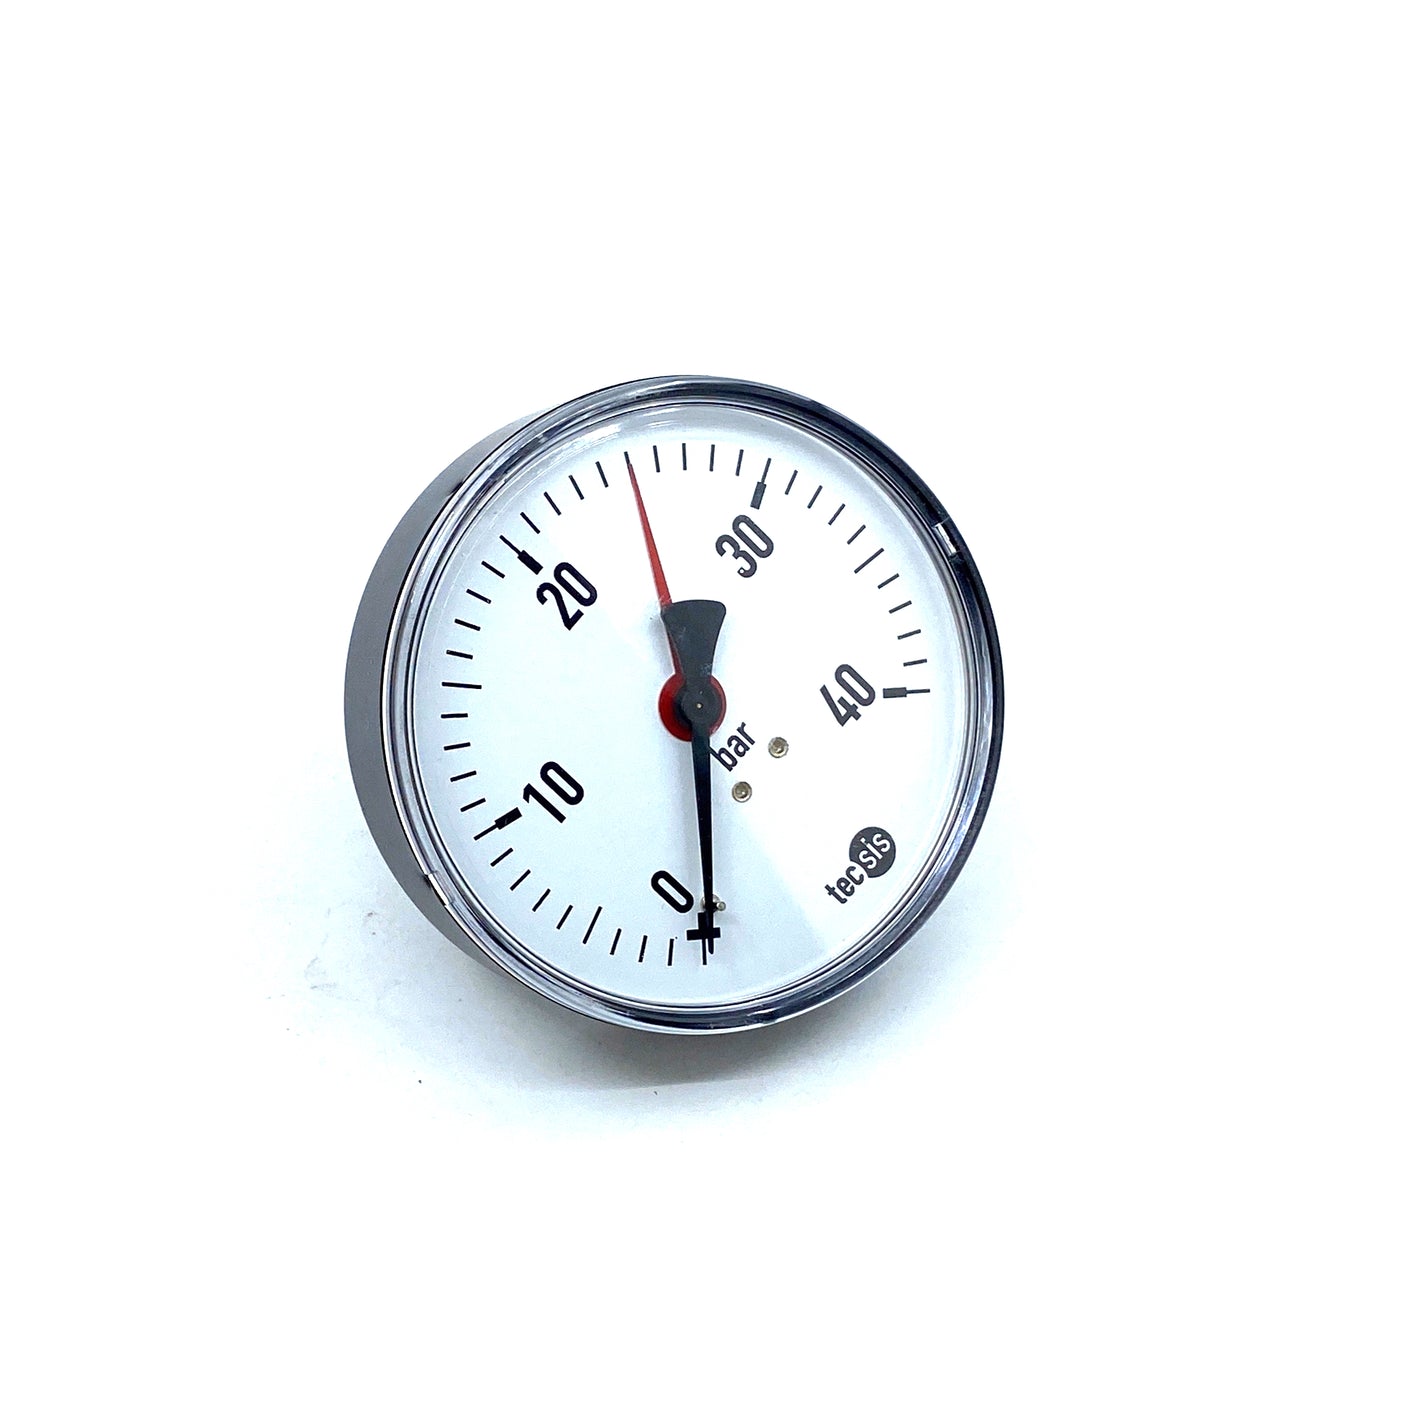 TECSIS NG/DIA manometer 18921570 pressure gauge 0-40bar G1/4B 